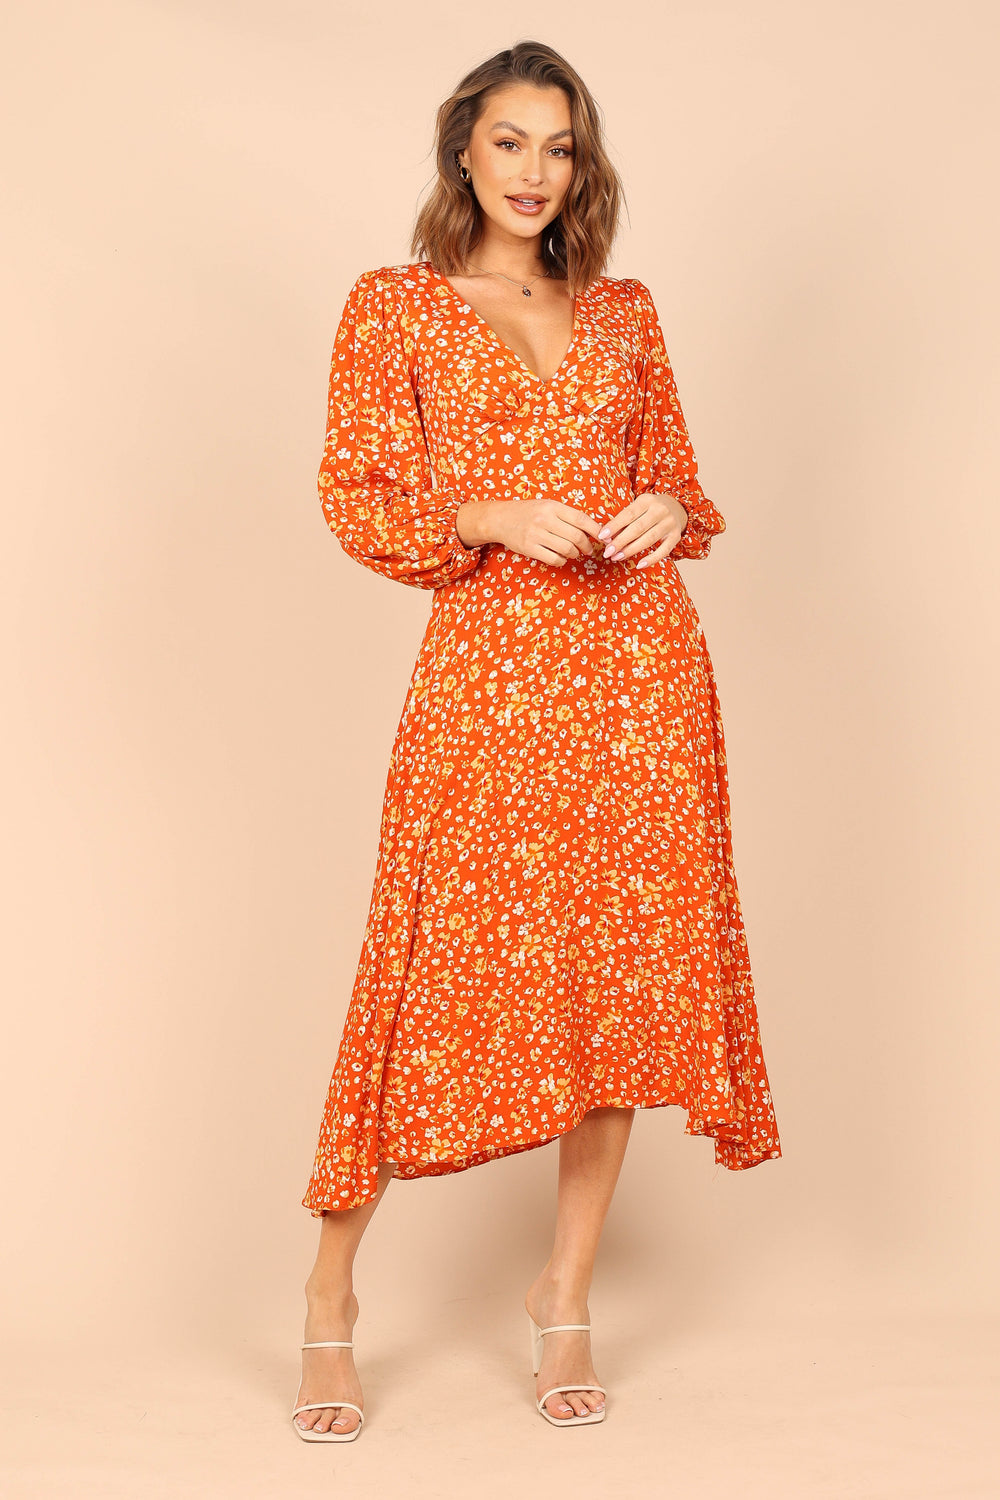 orange floral dress